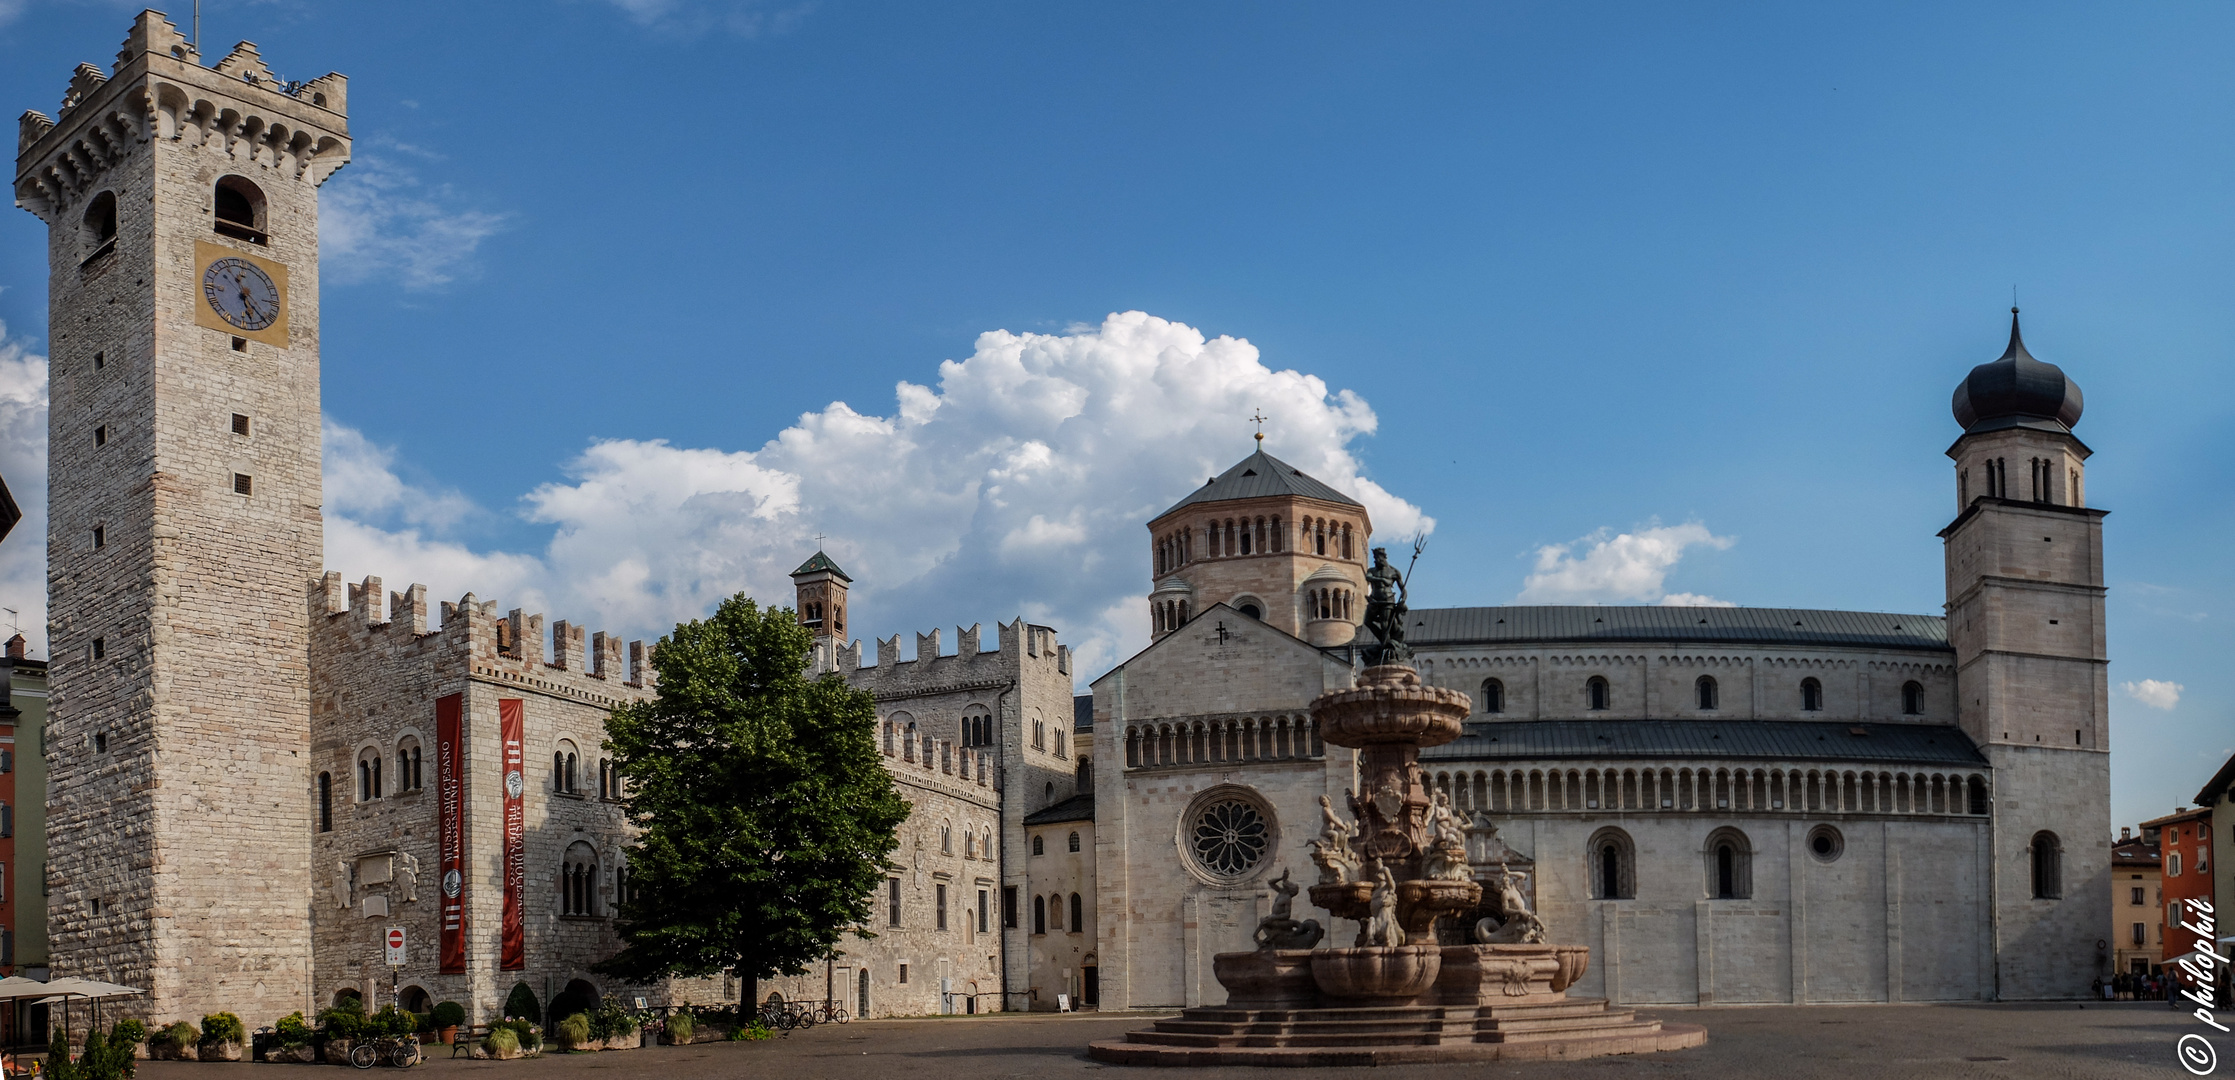 Piazza del Duomo di Trento